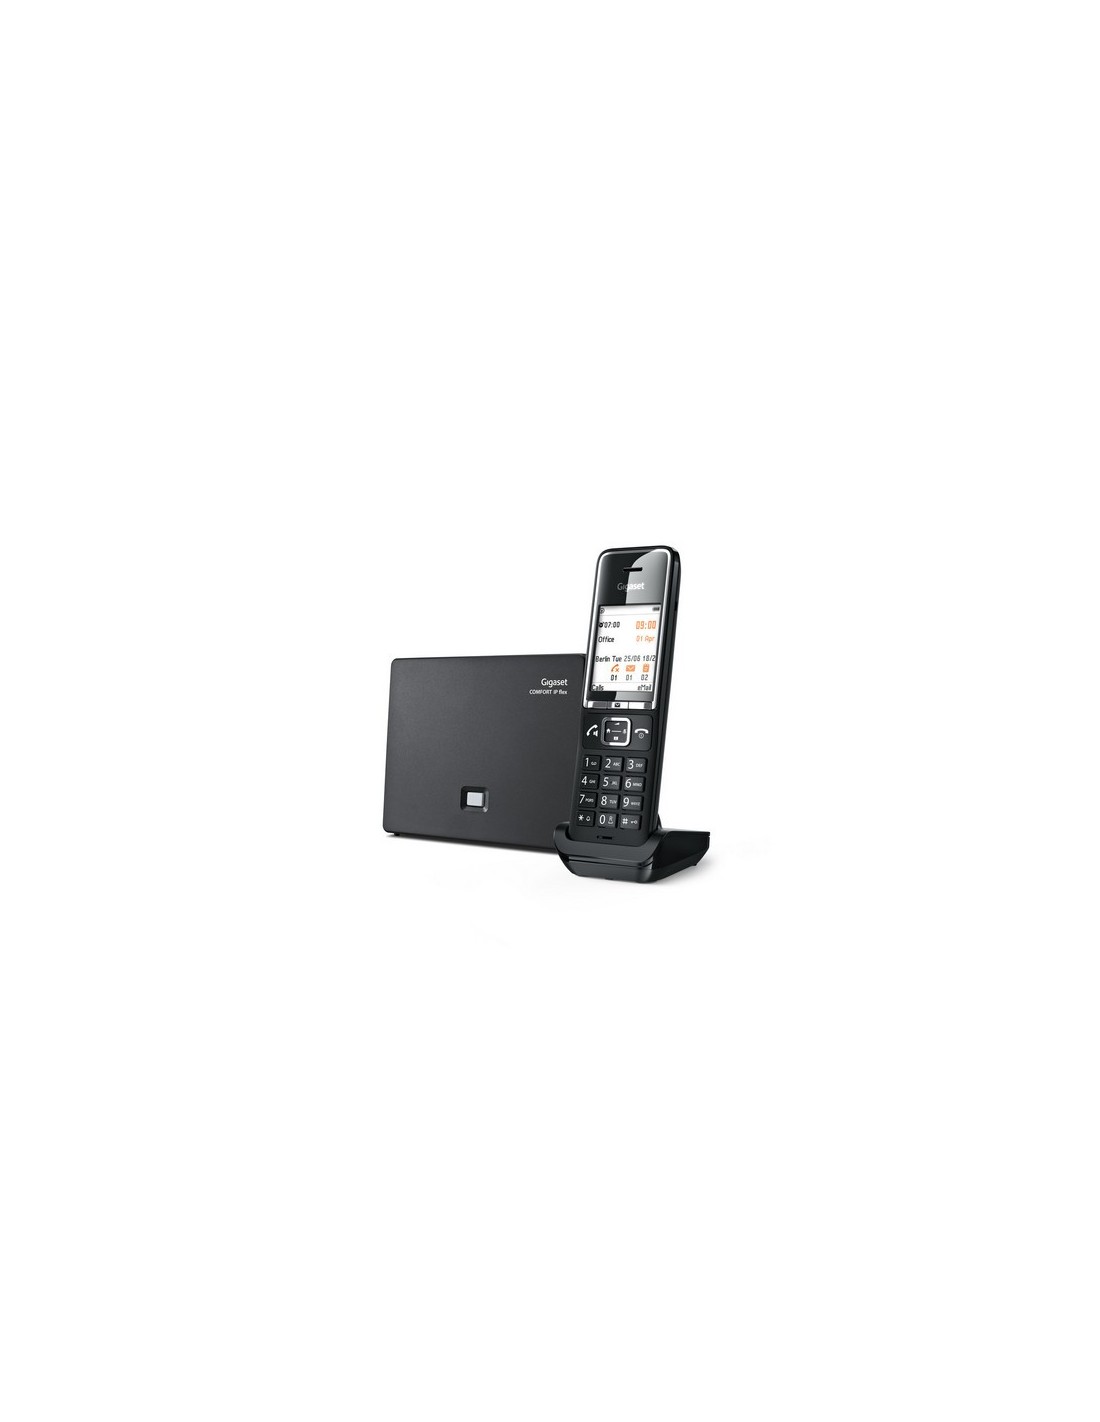 Téléphone sans fil Gigaset COMFORT 550A DUO REPONDEUR NOIR